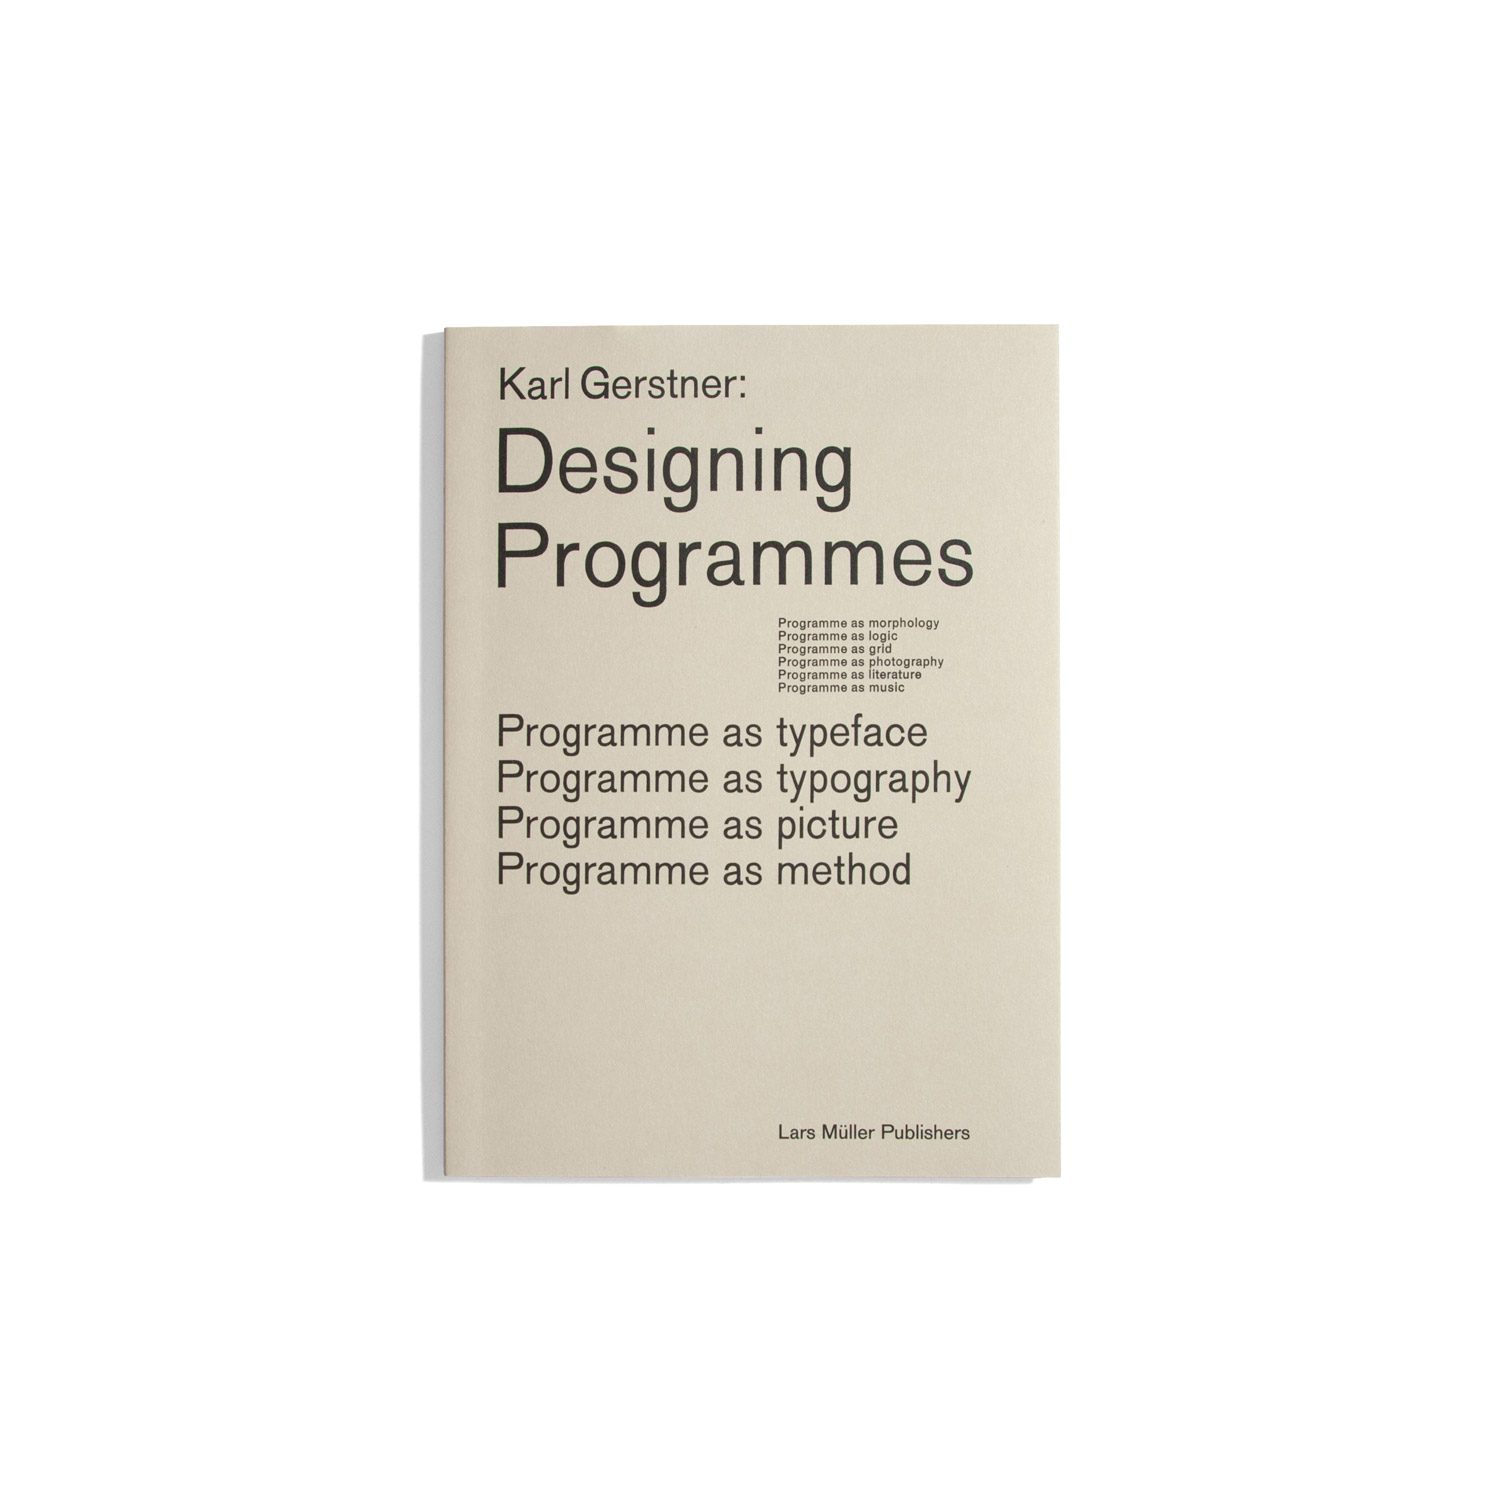 Designing Programmes - Karl Gerstner